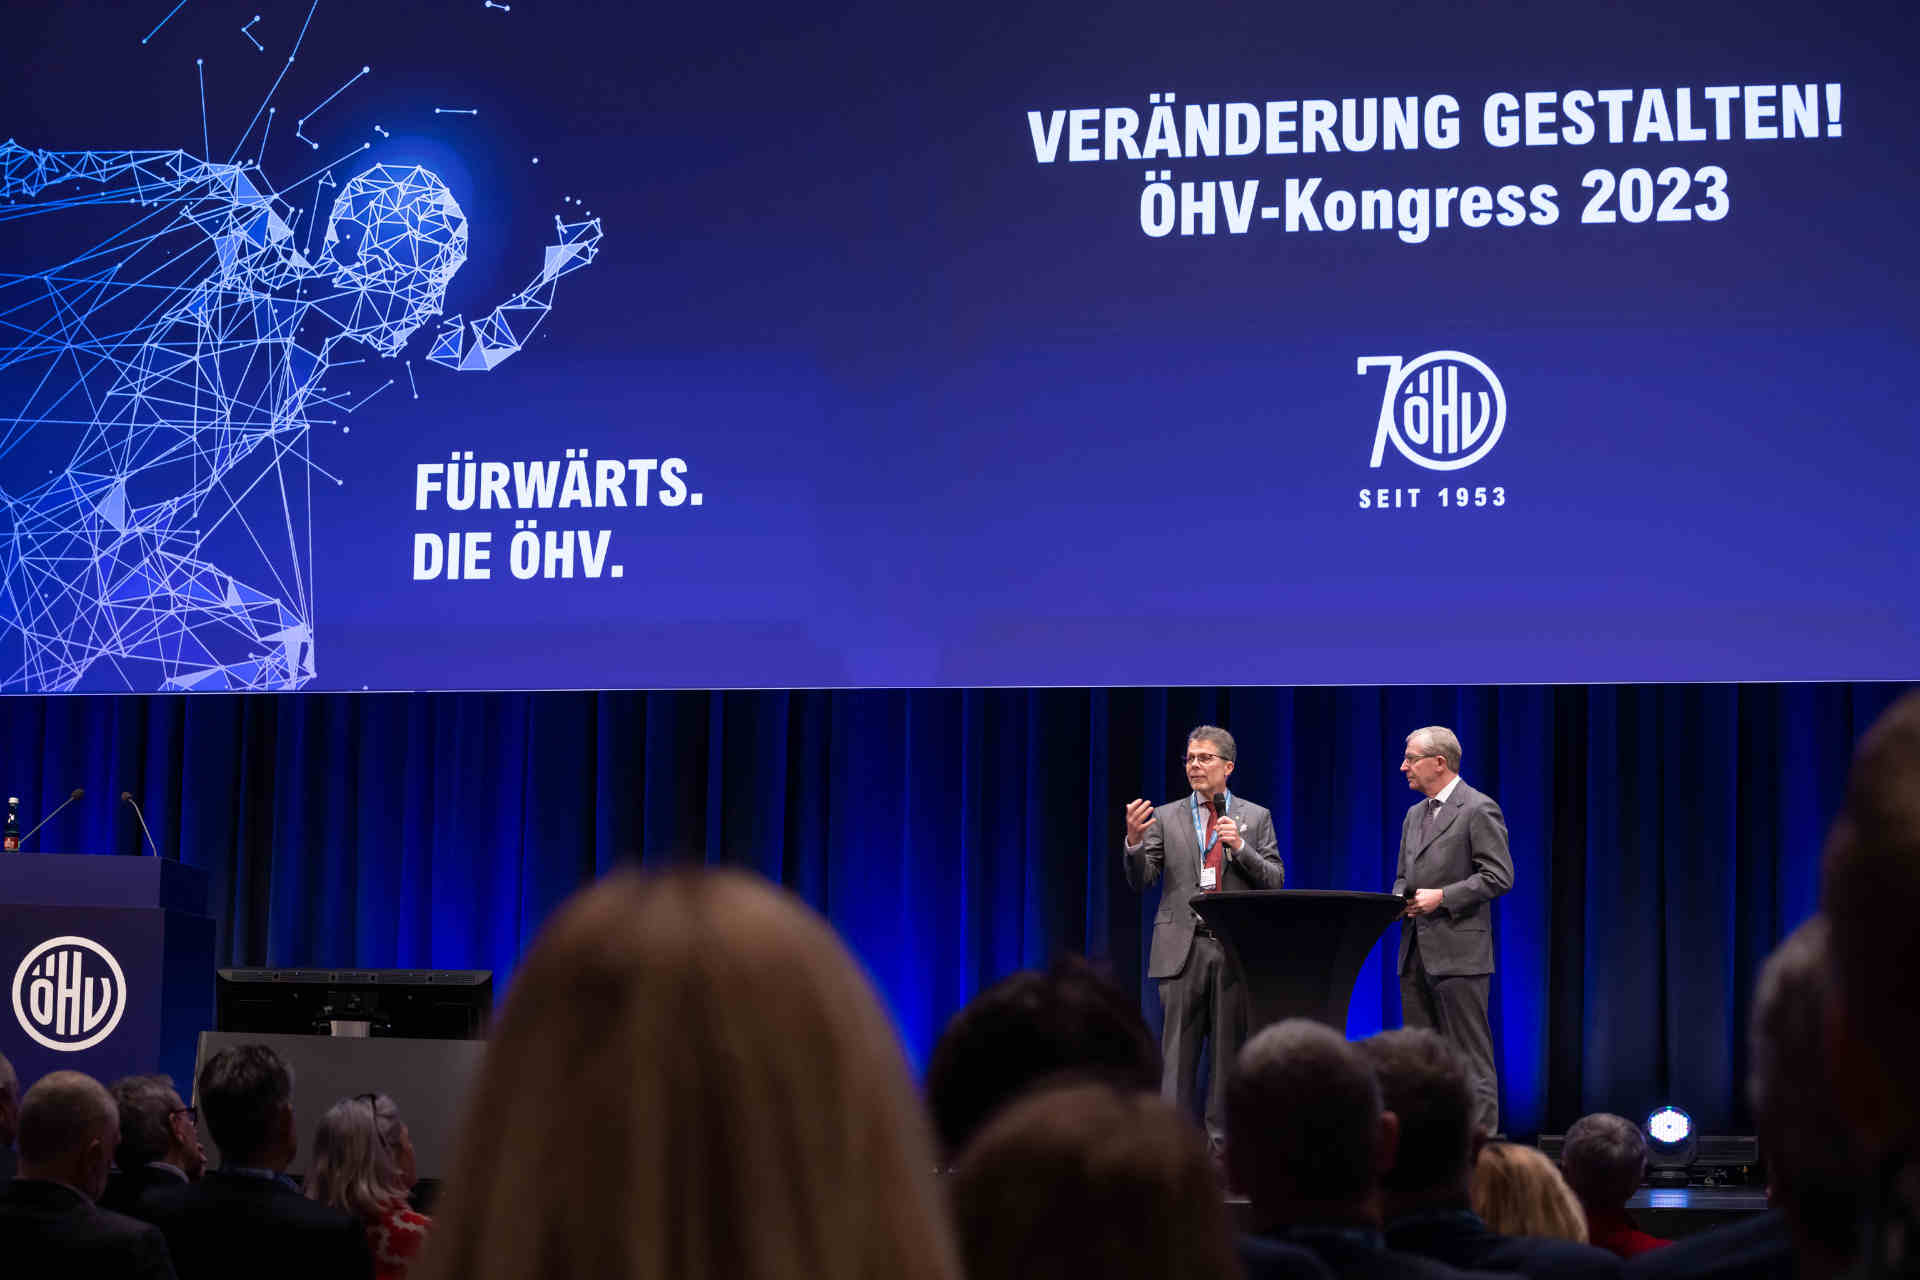 ÖHV-Präsident Walter Veit und Landeshauptmann Wilfried Haslauer. © ÖHV / Lechner